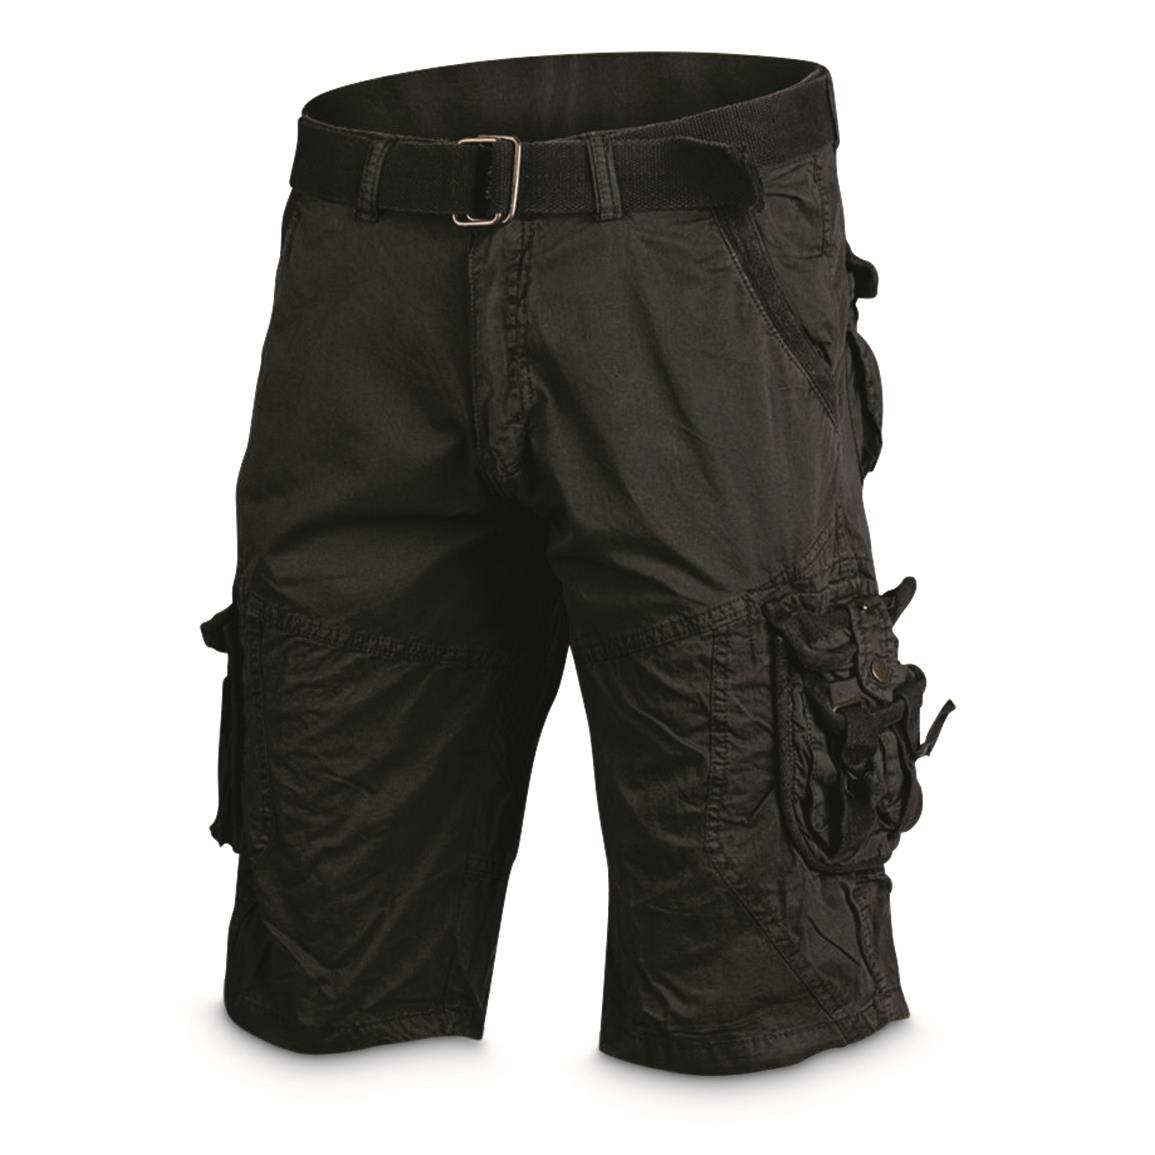 Mil-Tec Tactical Survival Shorts, Black